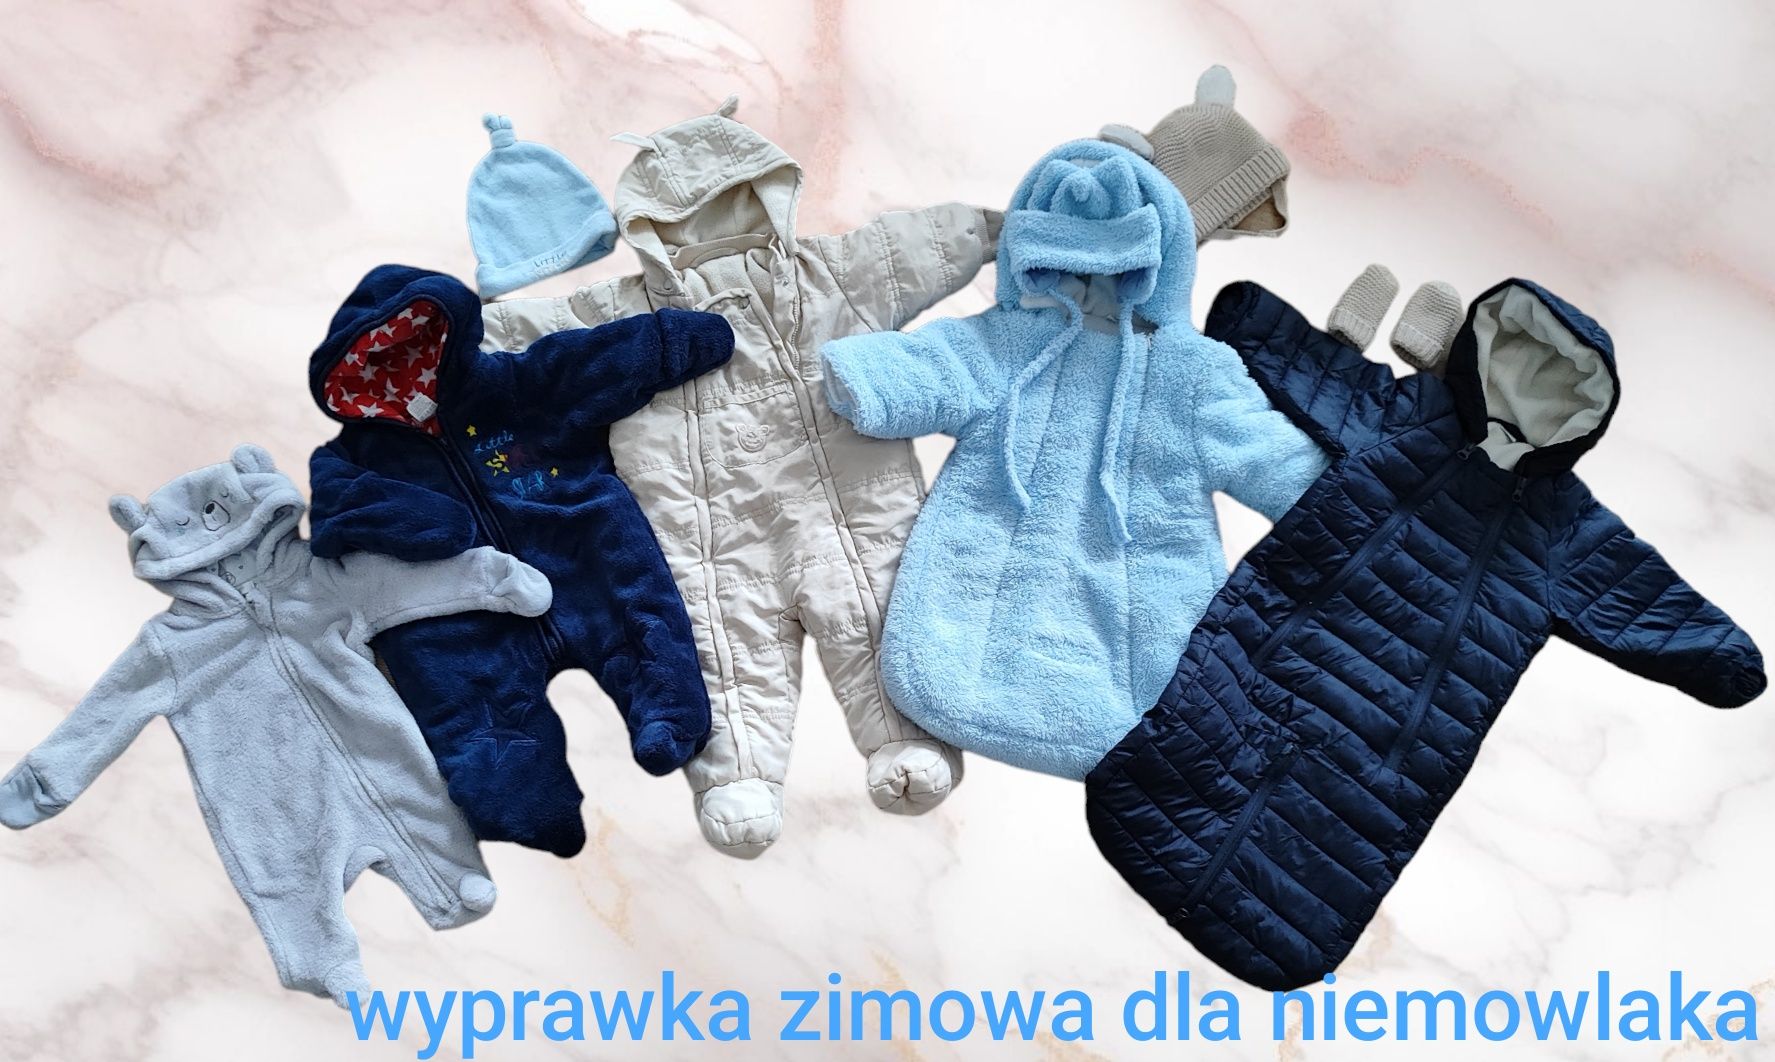 Wyprawka zimowa dla niemowlaka chłopca duża paka śpiworki ubranka